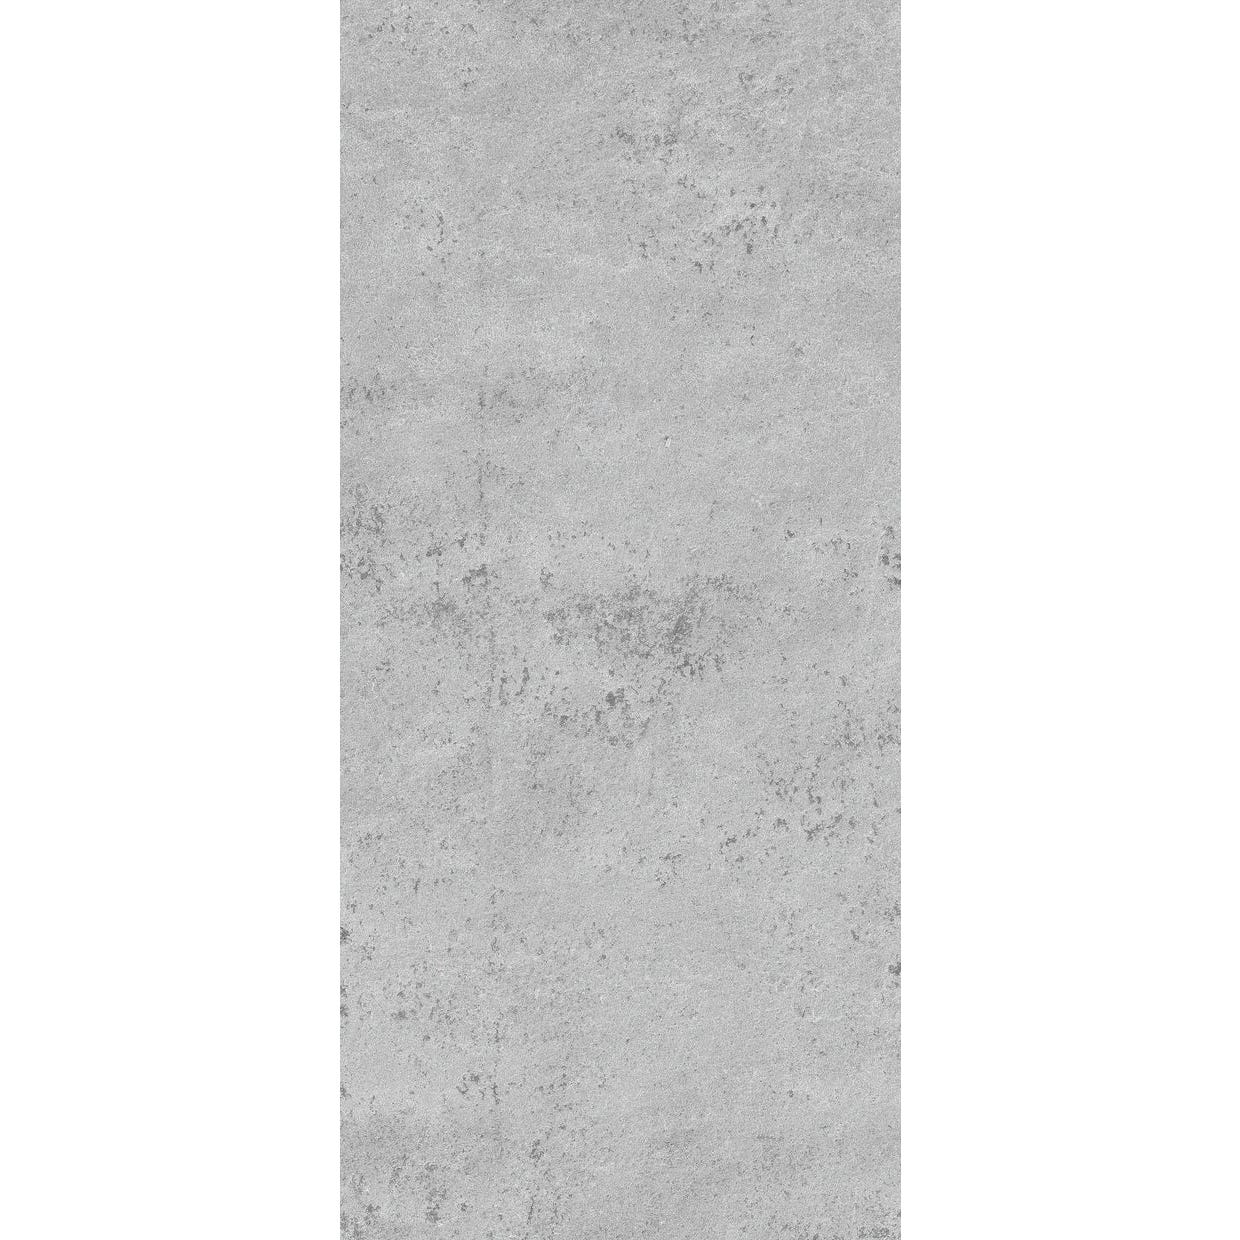 Schulte Panneau mural Pierre gris clair, revêtement pour douche et salle de bains, DécoDesign DÉCOR, pack 3 panneaux muraux 100 x 210 cm + 5 profilés 1